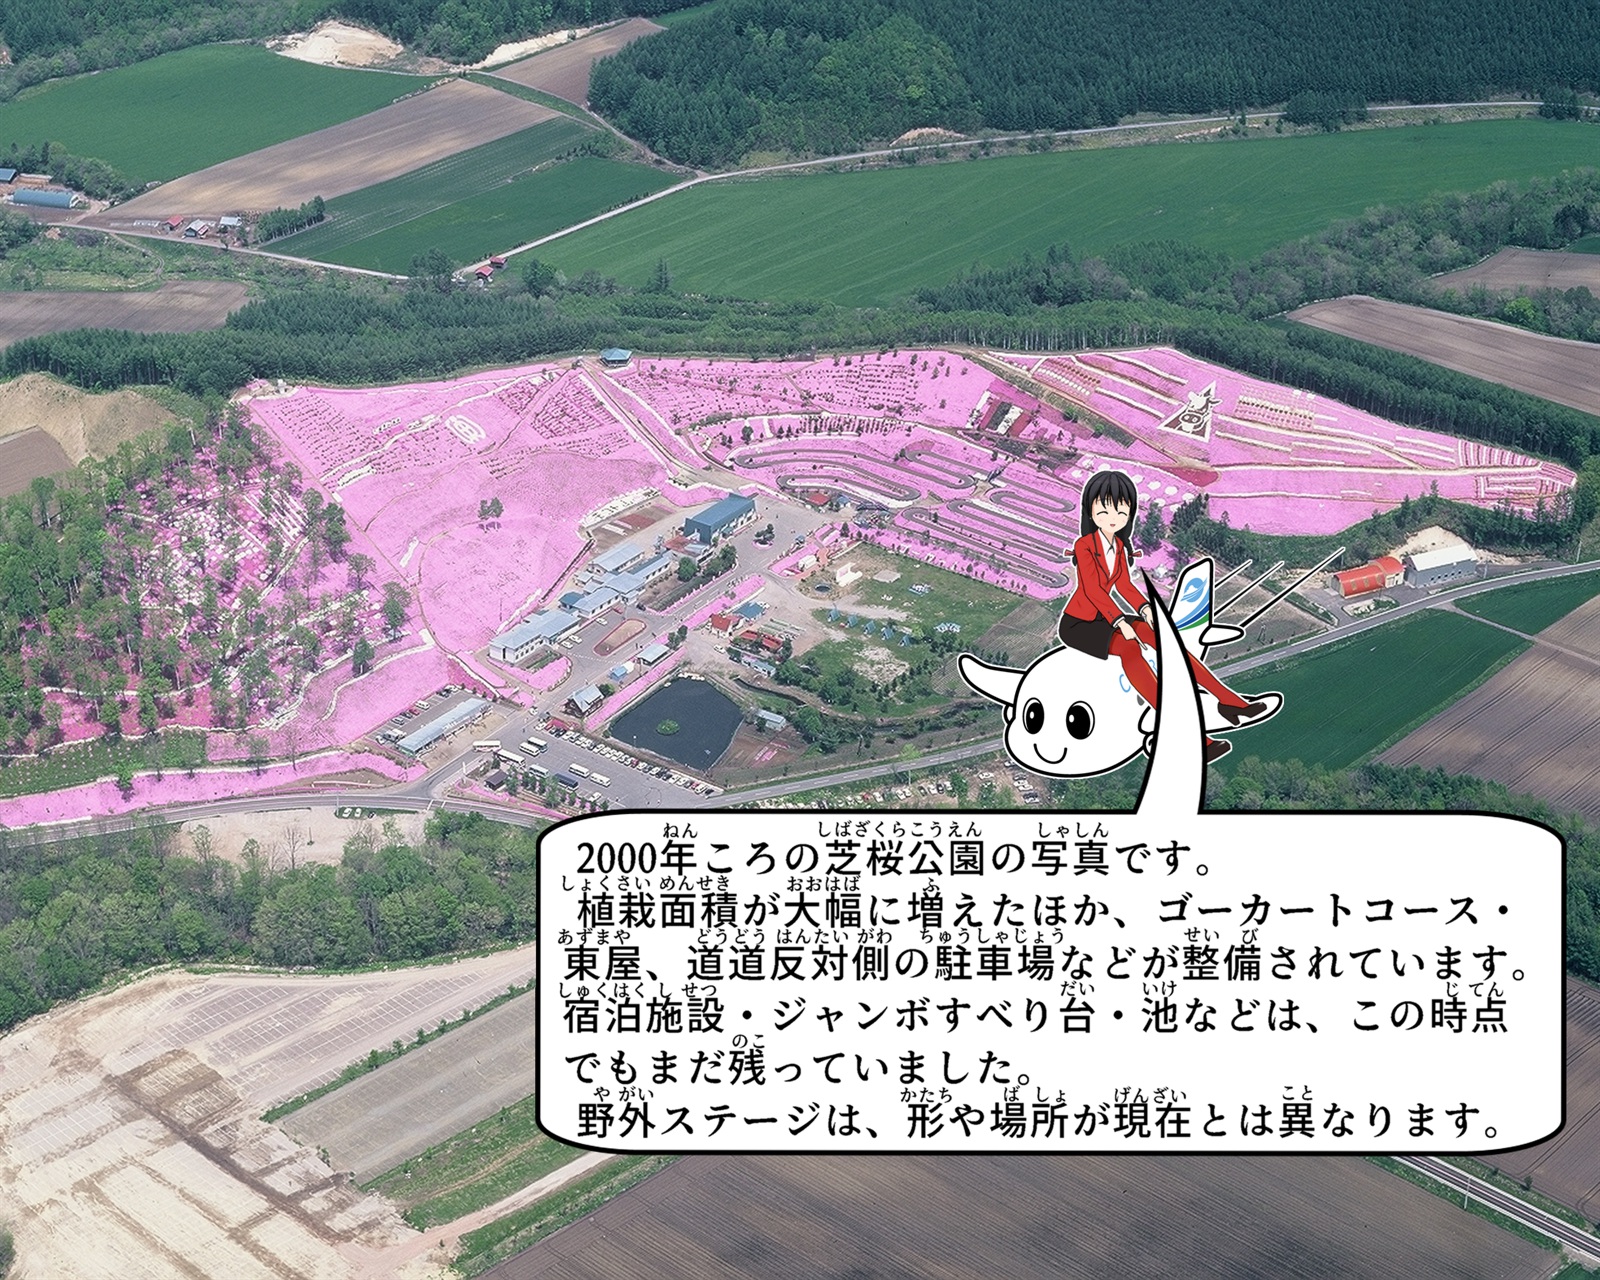 2000年ころの芝桜公園の航空写真について説明しているイラスト